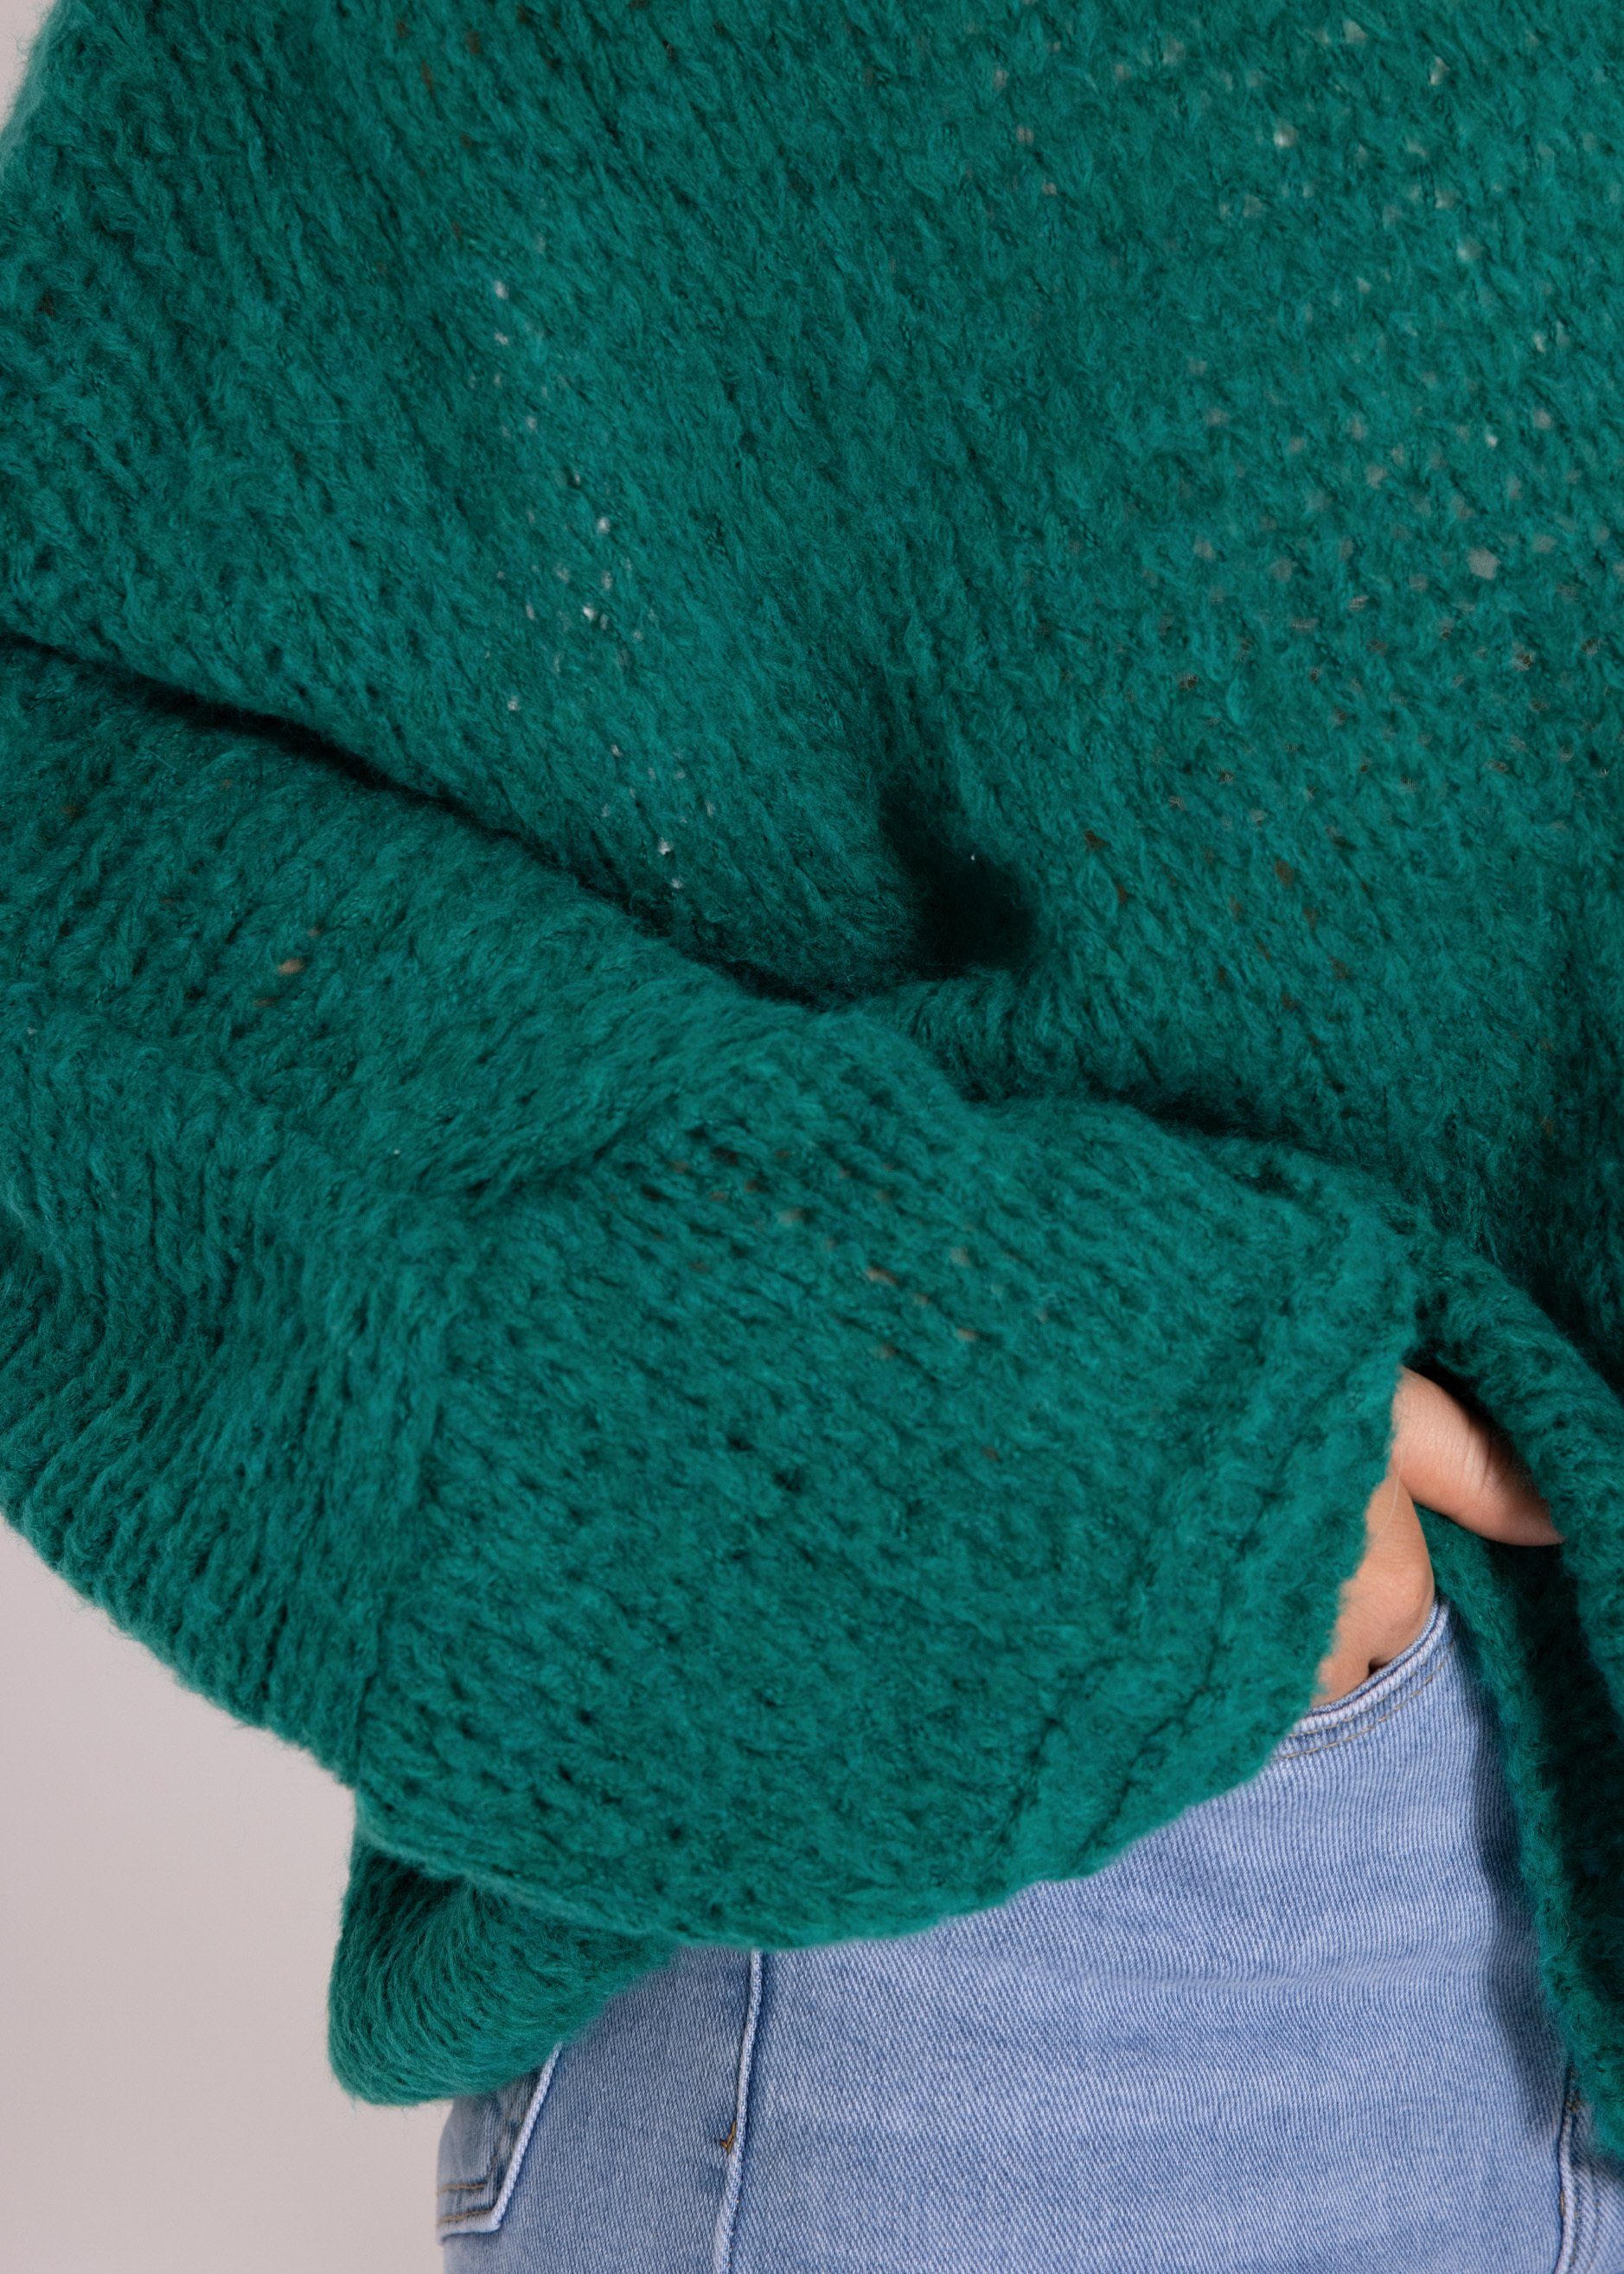 SASSYCLASSY Strickpullover Oversize Pullover aus Damen Italy weichem Strickpullover Lässiger in lang Rundhals-Ausschnitt, Grün Made Grobstrick mit